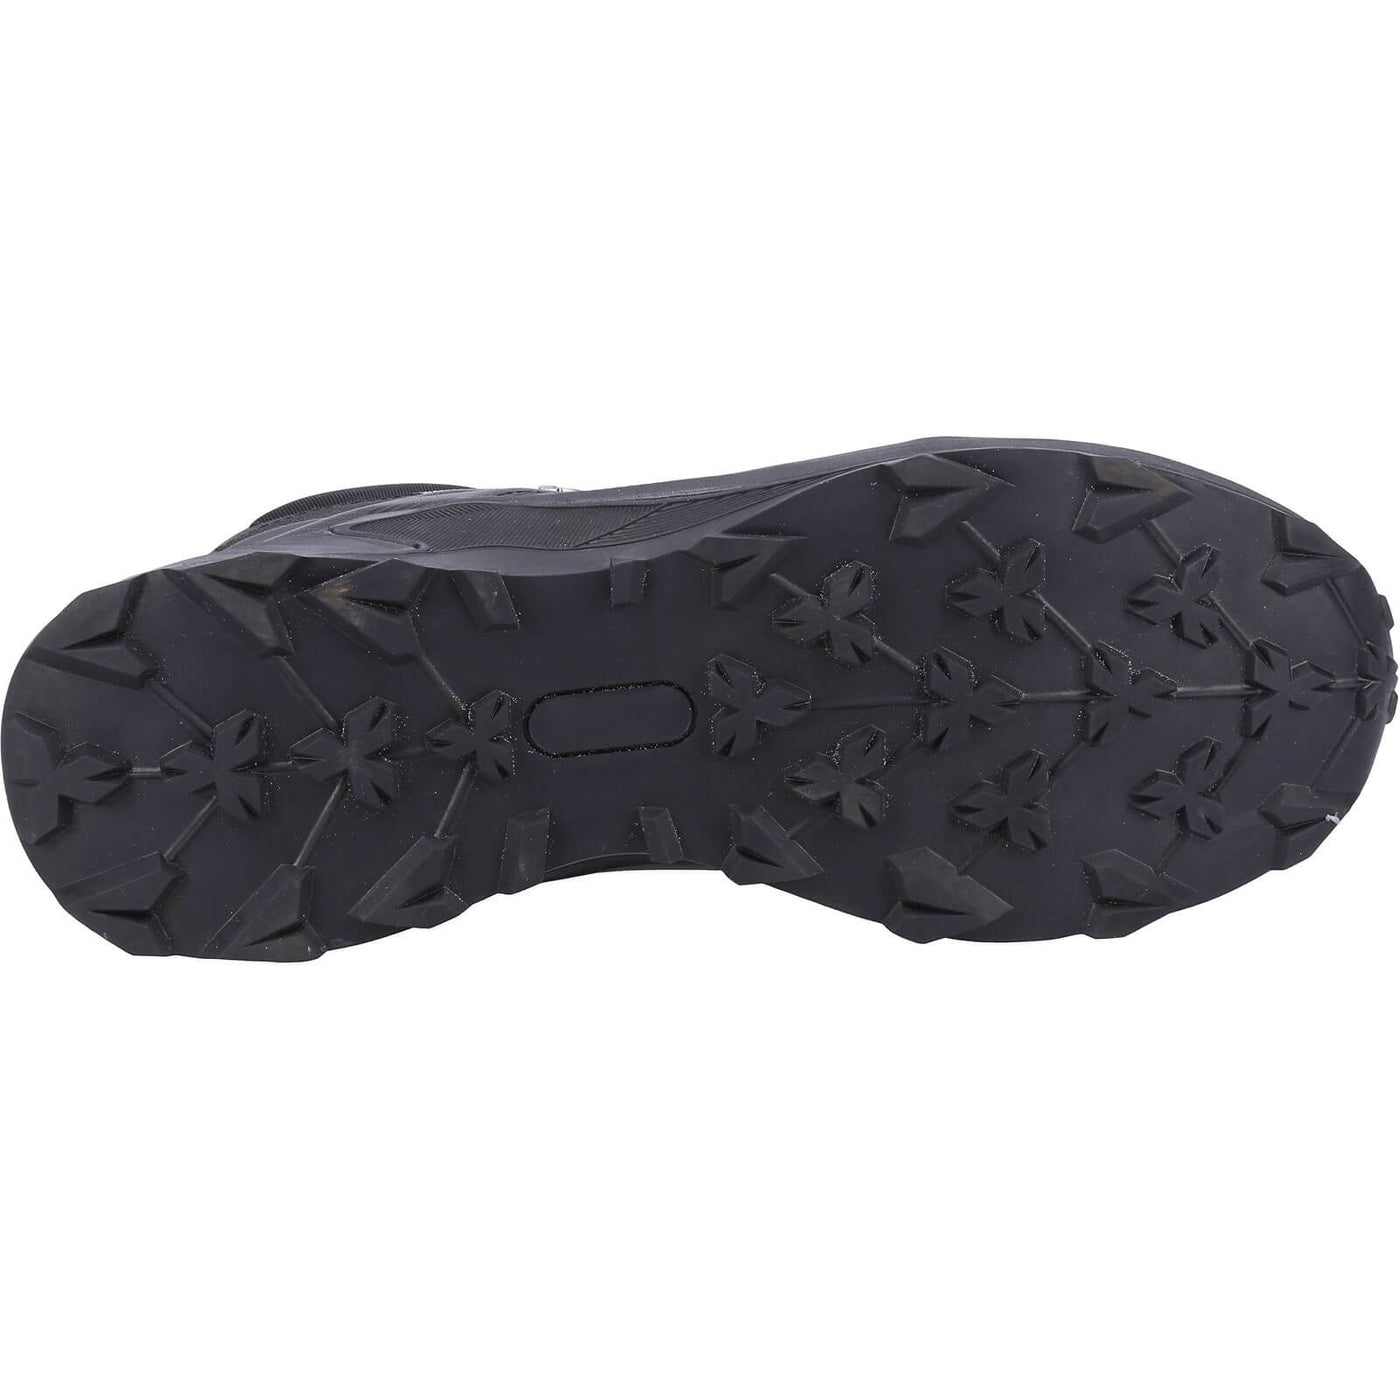 Cotswold Horton Hiking Boots Black 3#colour_black